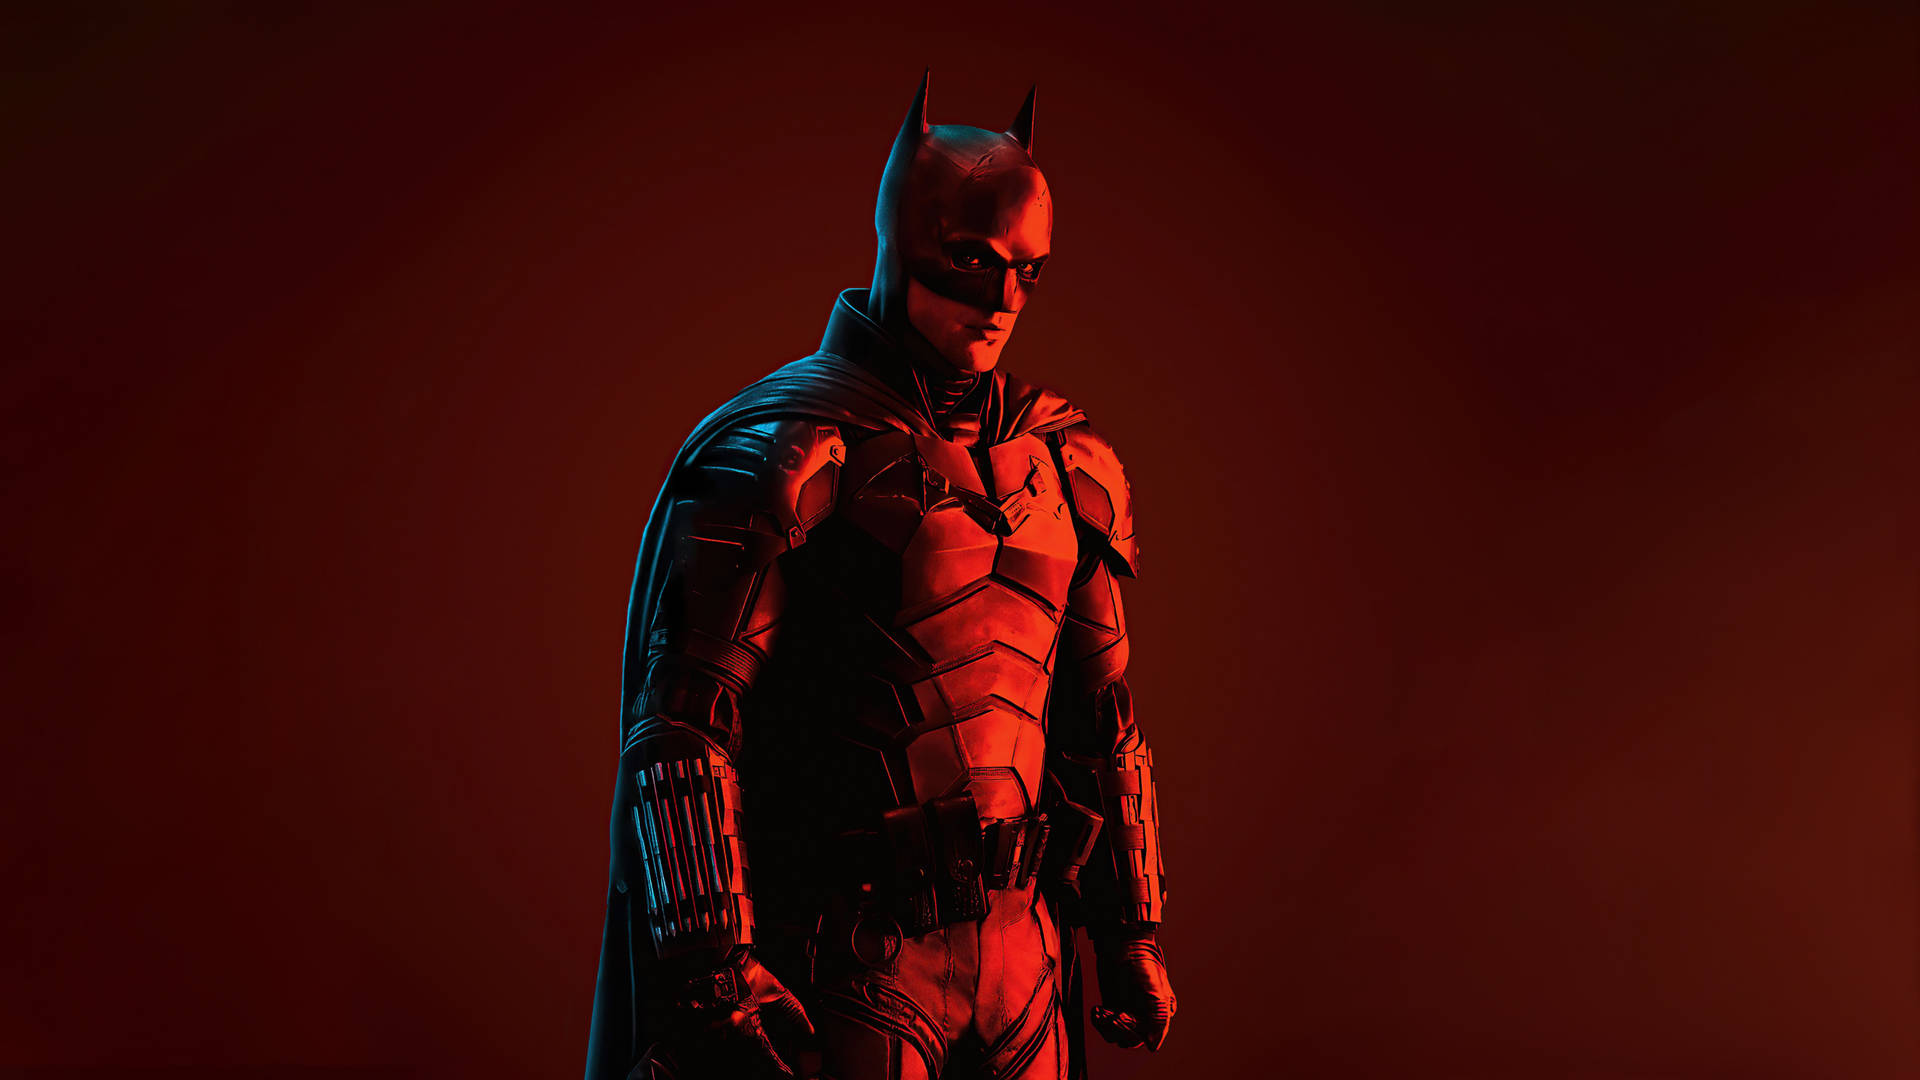 Dark Knight Rises – Batman in heroic view Wallpaper